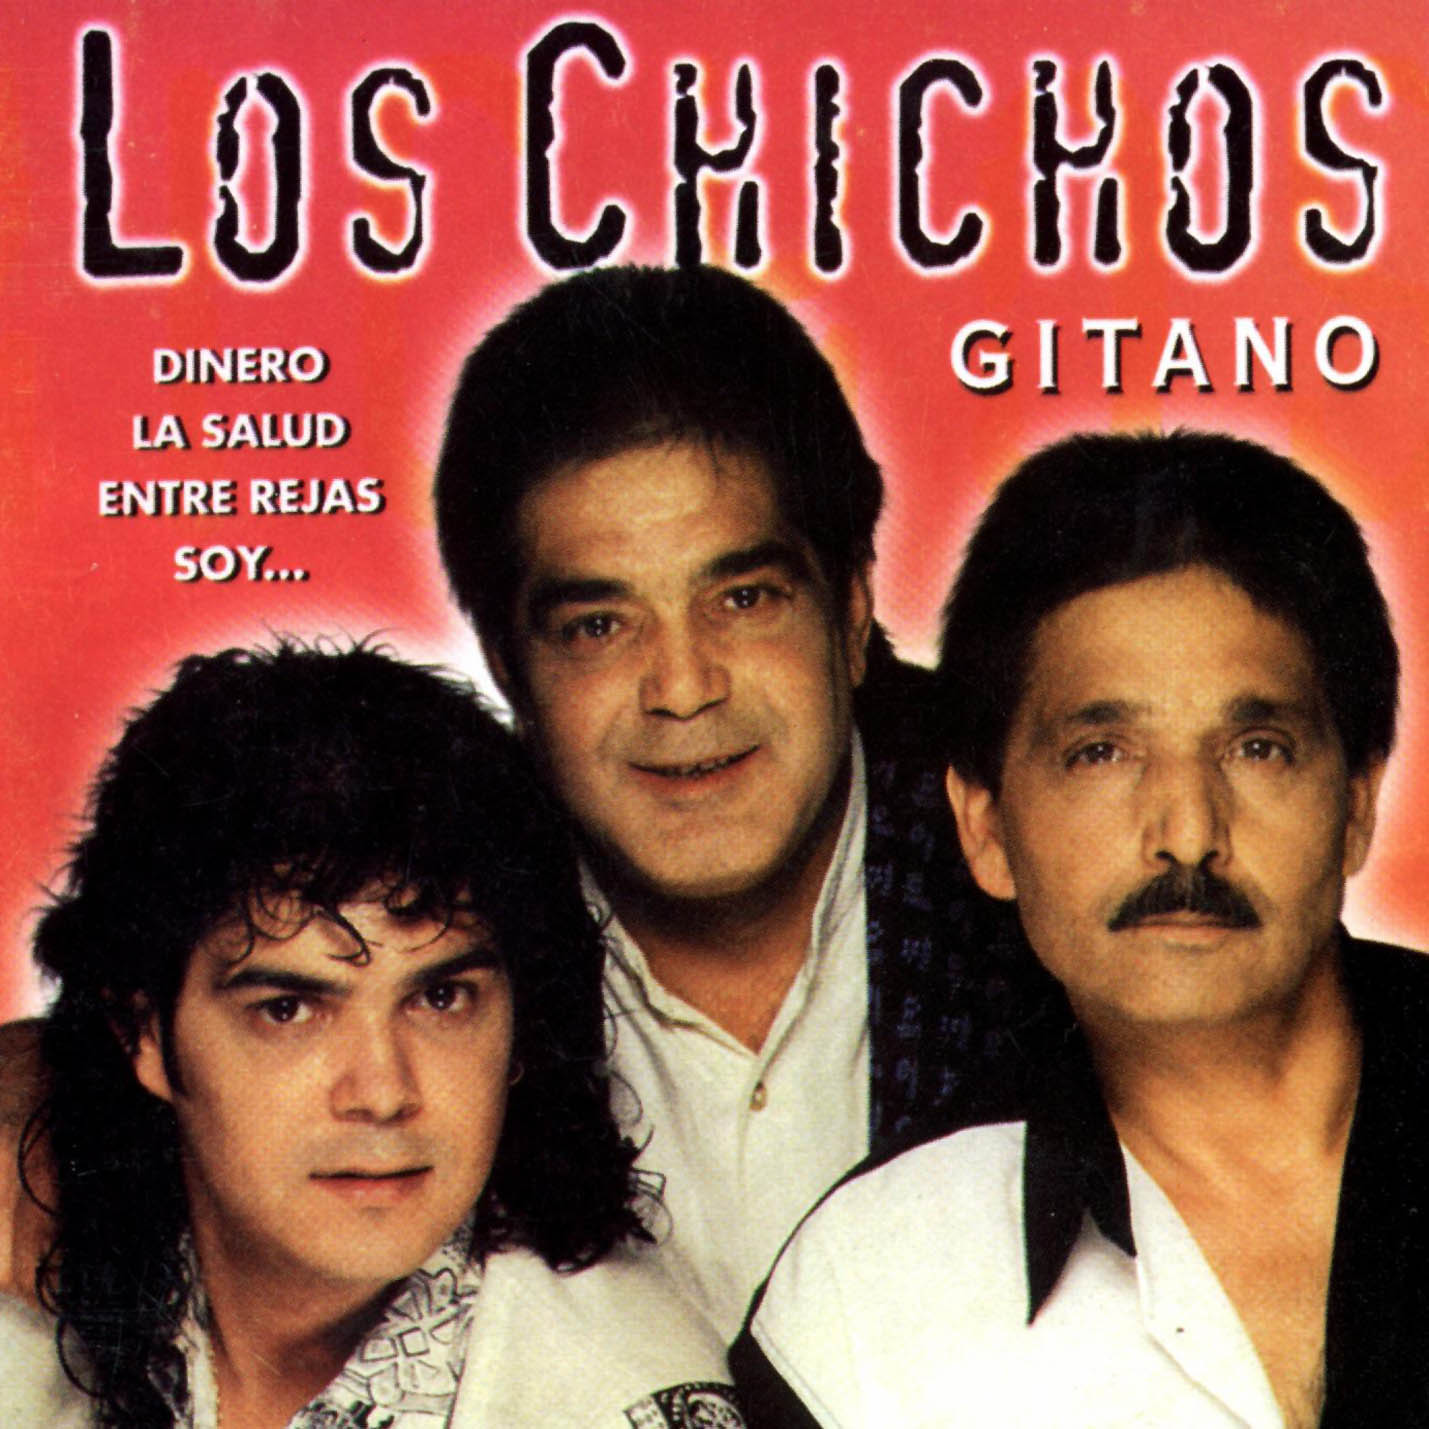 Los_Chichos-Gitano-Frontal.jpg